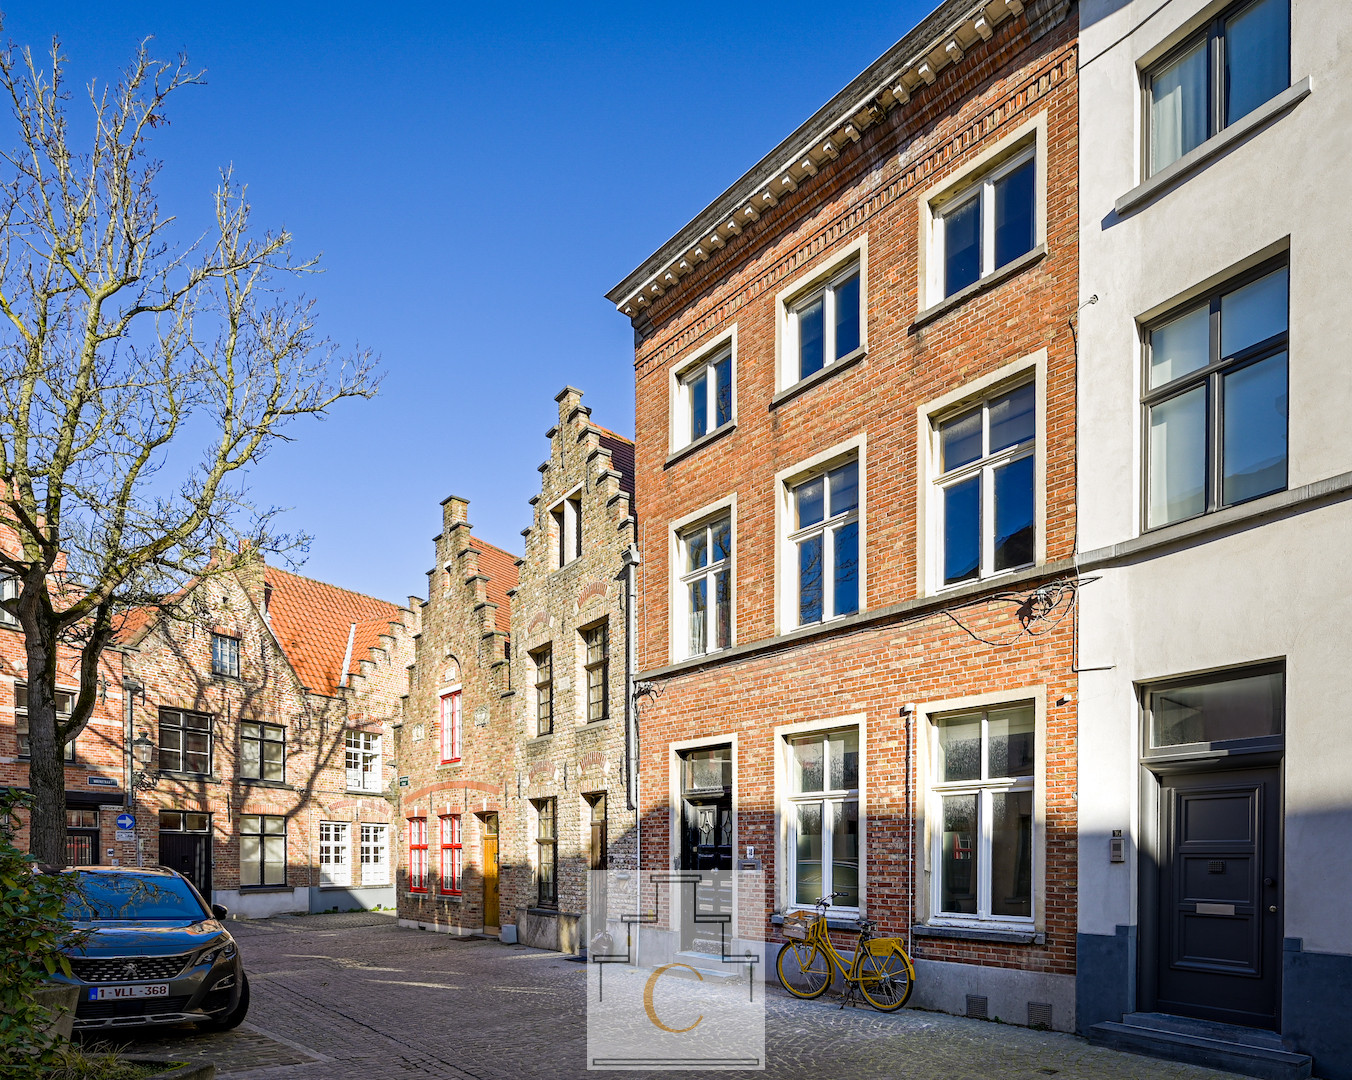 projectpand-diephuis met Brugse charme en karakter, schilderachtige ligging tussen Moerstraat en Prinsenhof